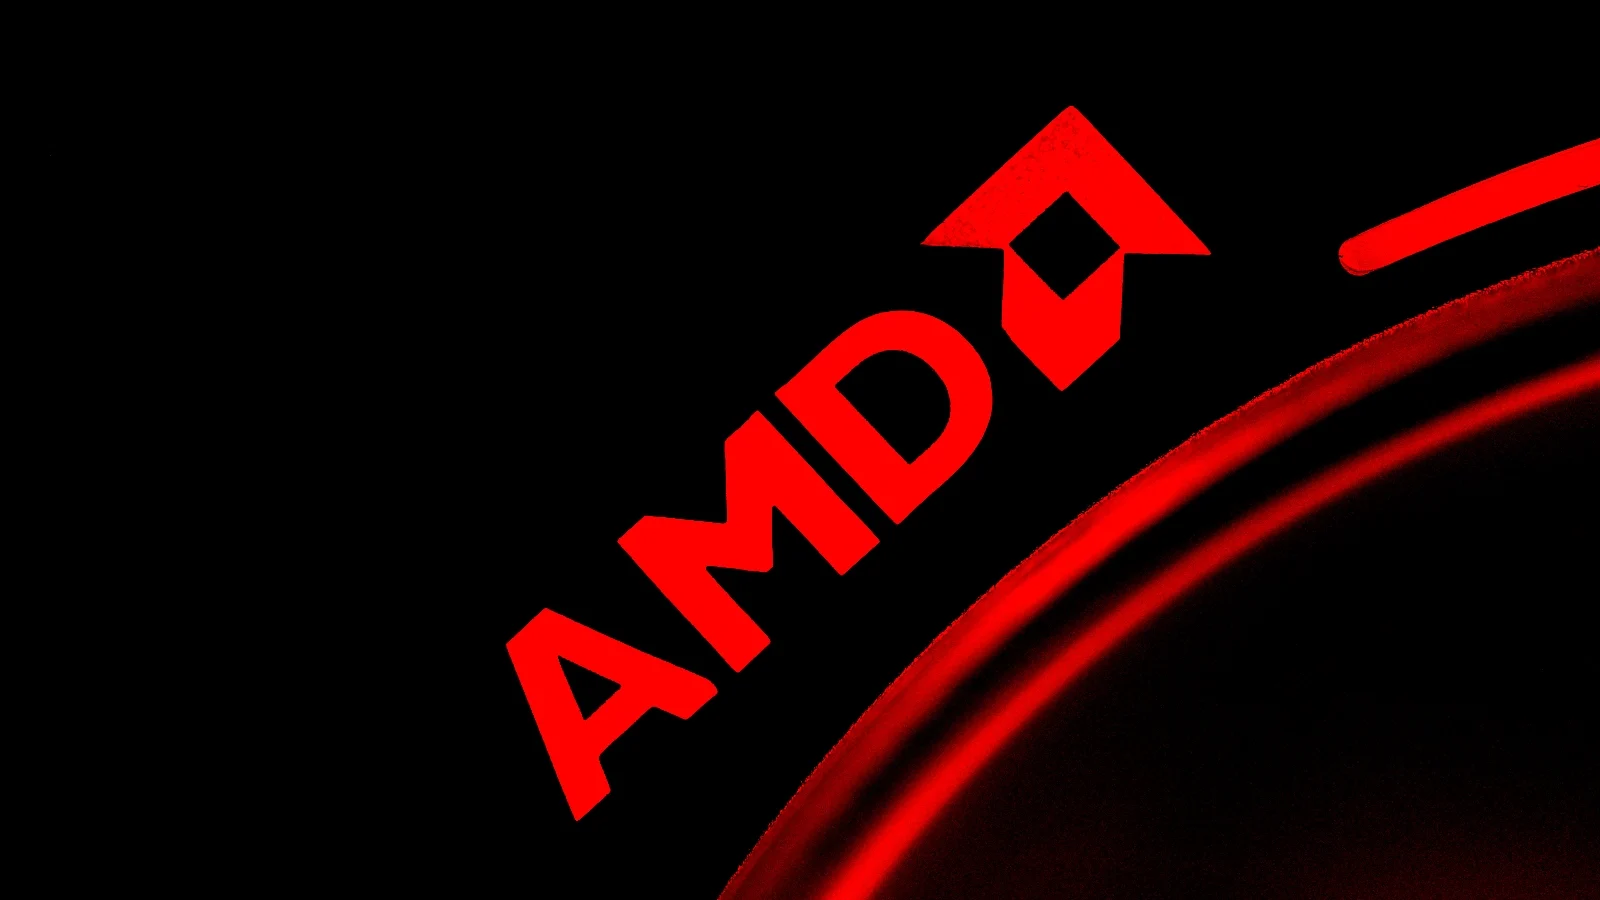 RansomHouse勒索团伙声称拥有450Gb的AMD数据